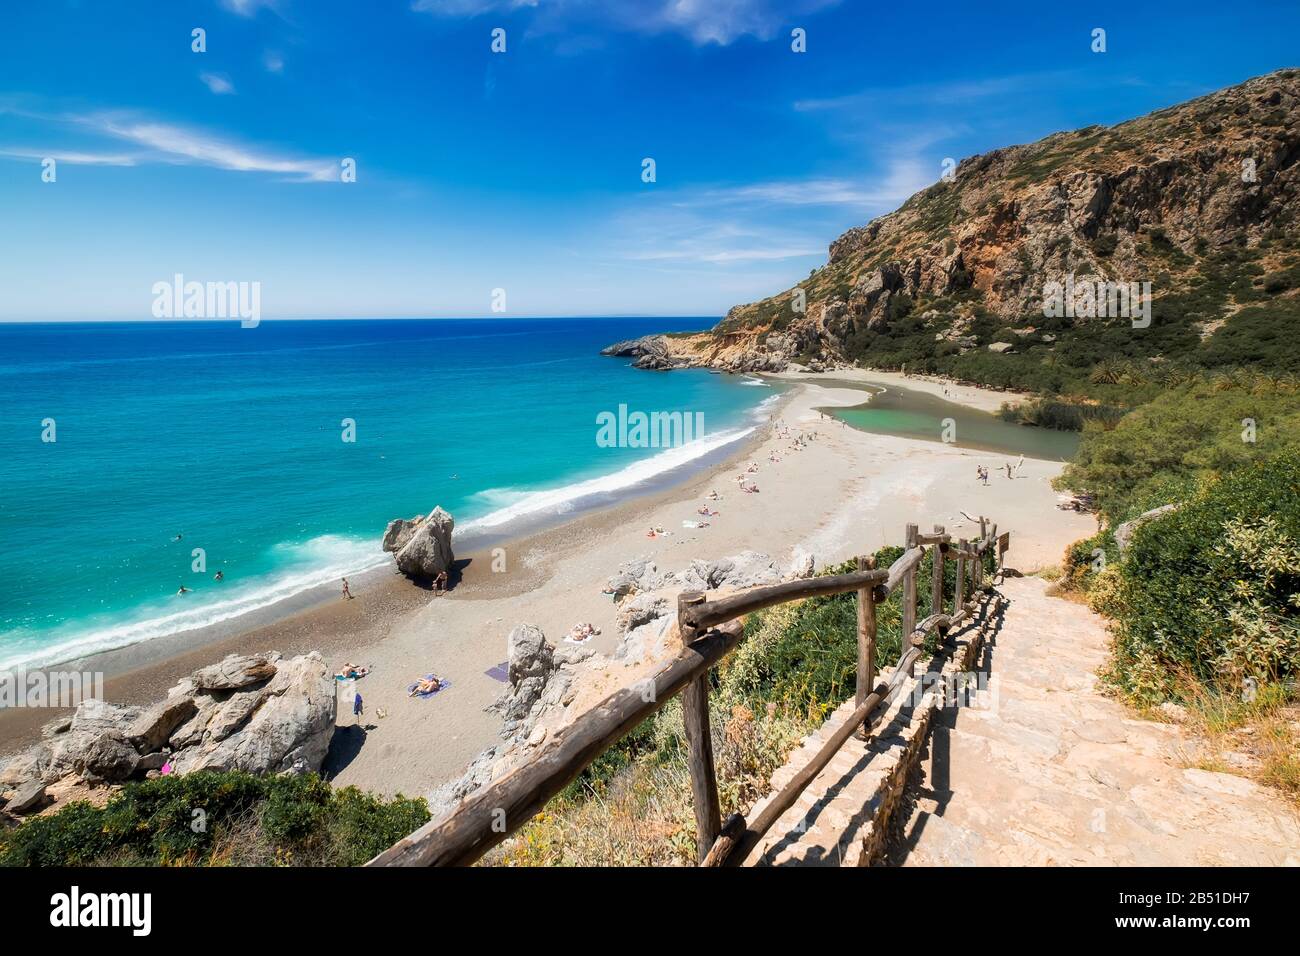 Incredibile spiaggia Preveli con acque turchesi e colline rocciose. Persone che nuotano in acque azzurre e che nuotano sulla sabbia. I turisti che si rilassano a Creta al sole Foto Stock